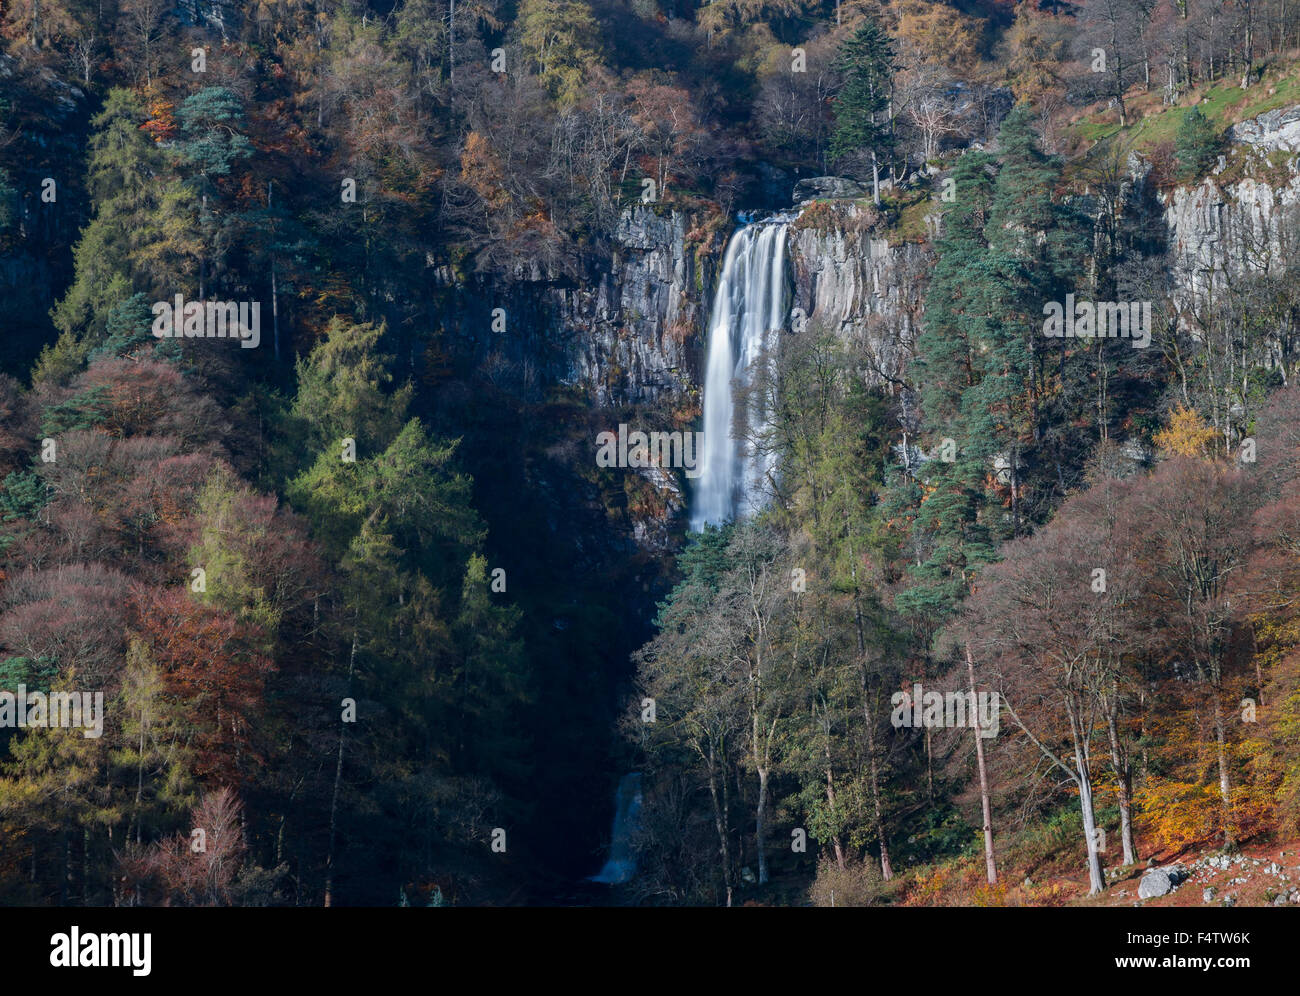 Pistyll Rhaeadr waterfall, Wales Stock Photo